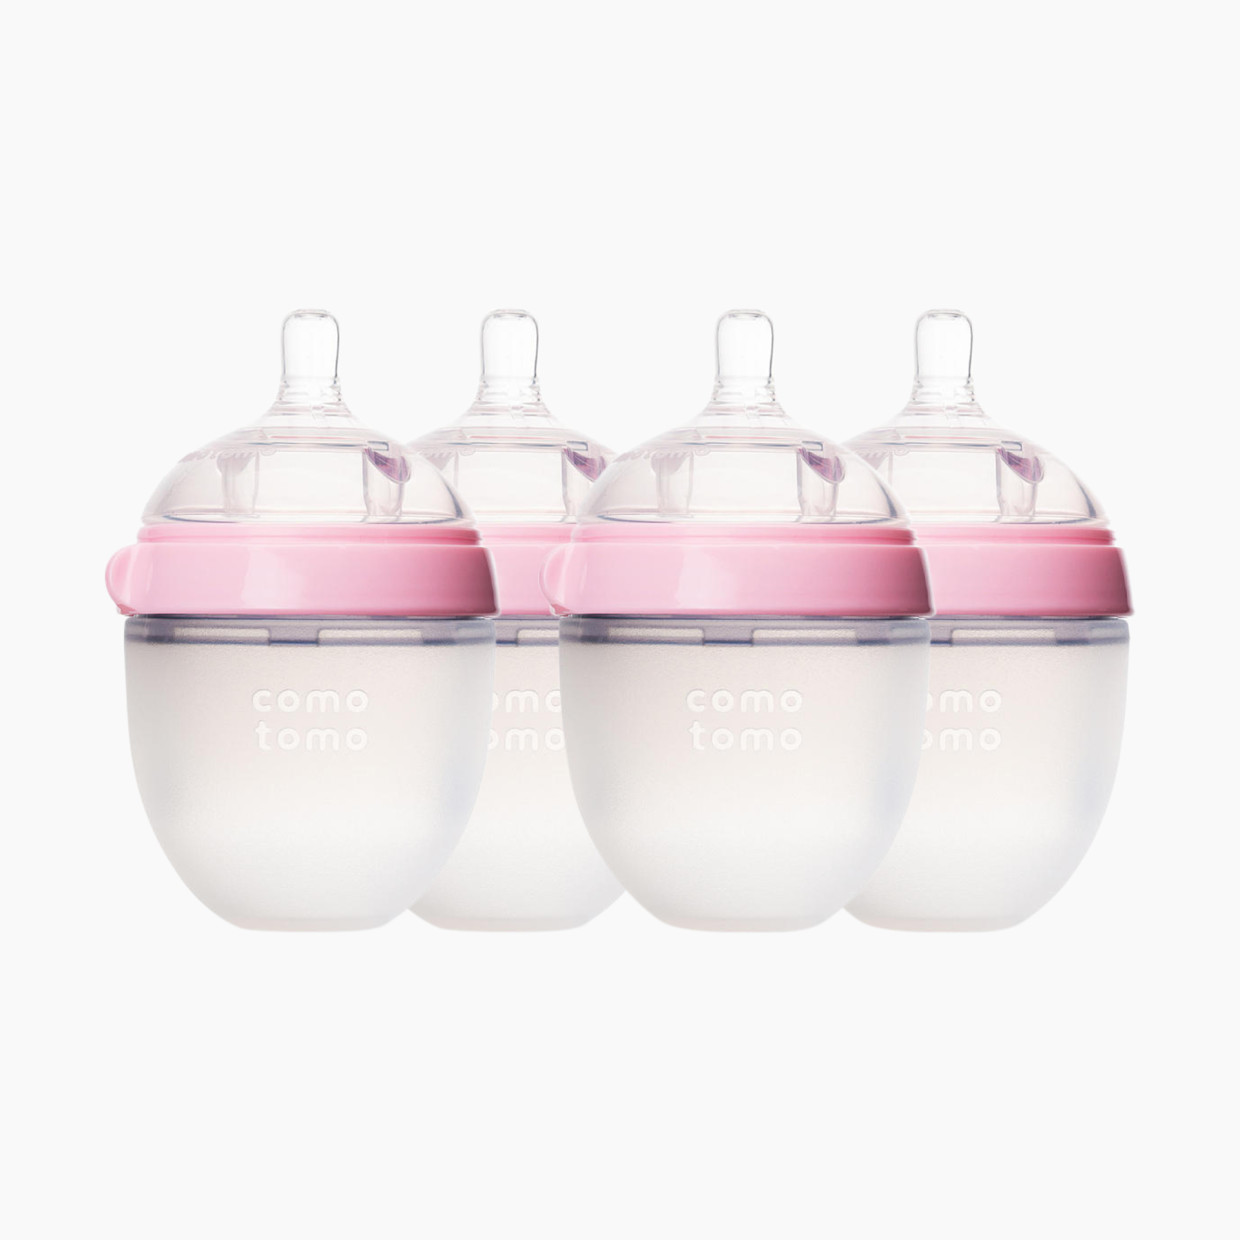 Comotomo Natural Feel Silicone Baby Bottles - Pink, 5 Oz, 4.